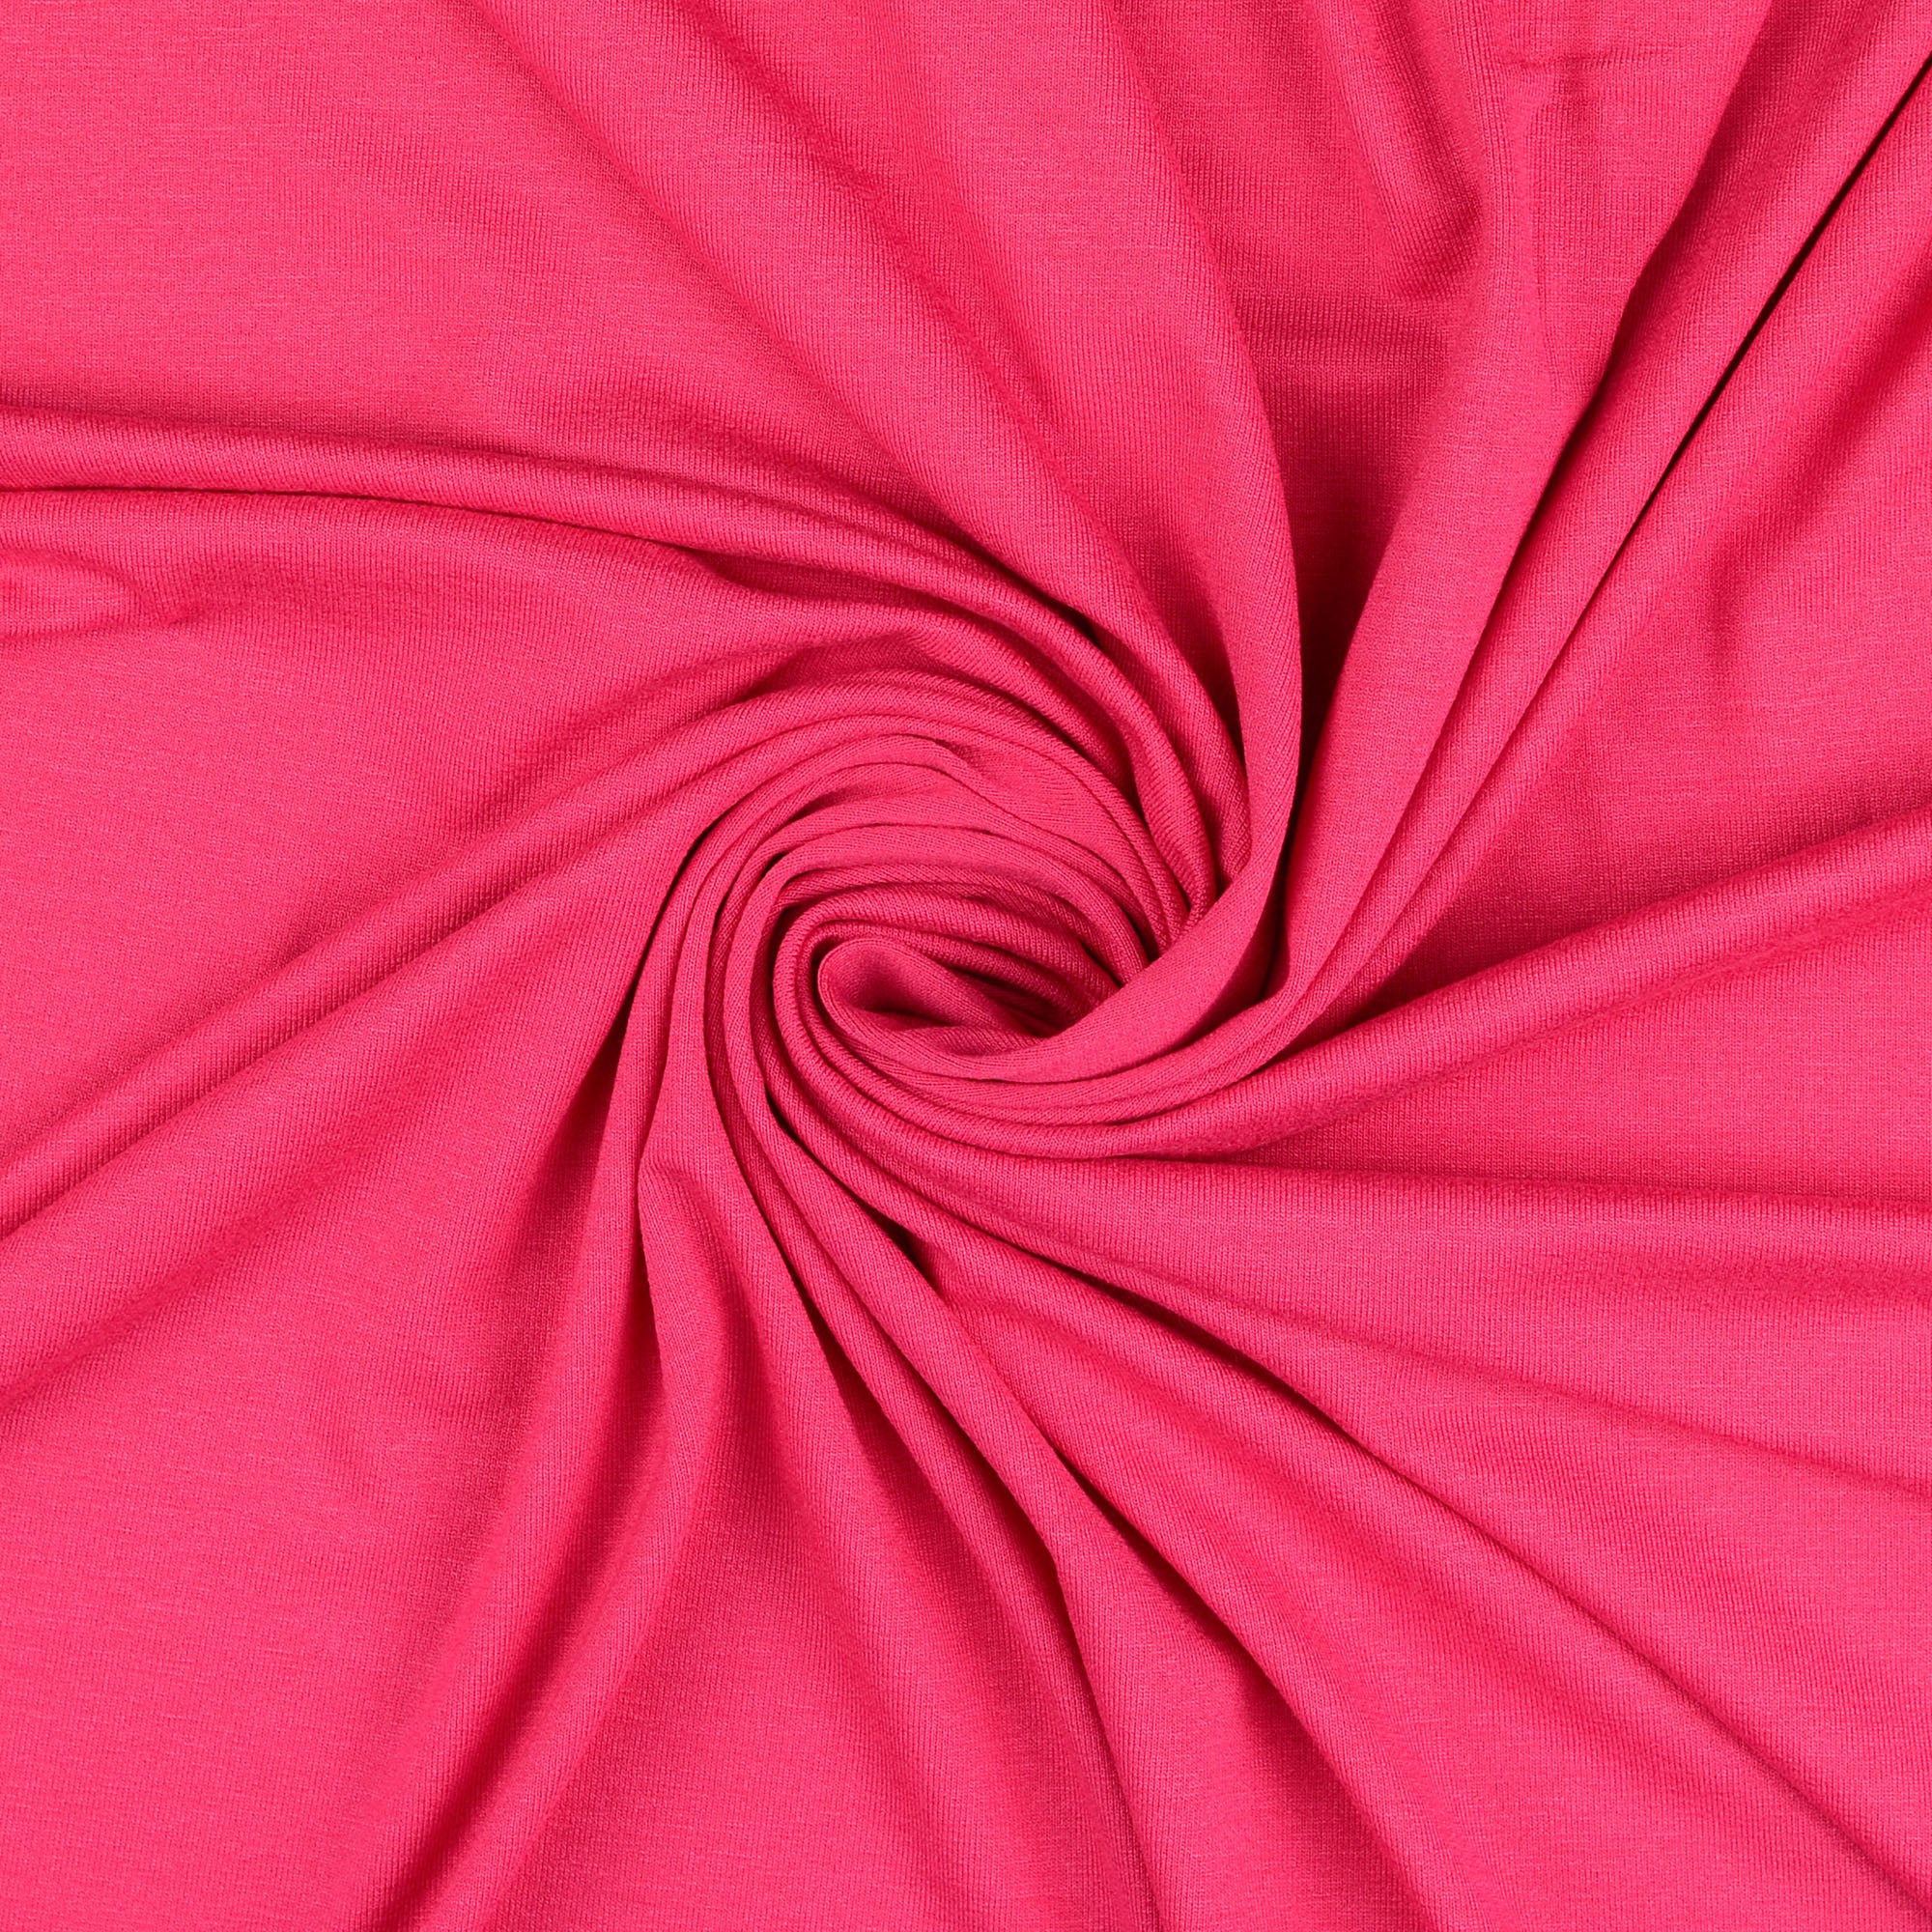 Essential Chic Bright Fuchsia Cotton Jersey Fabric